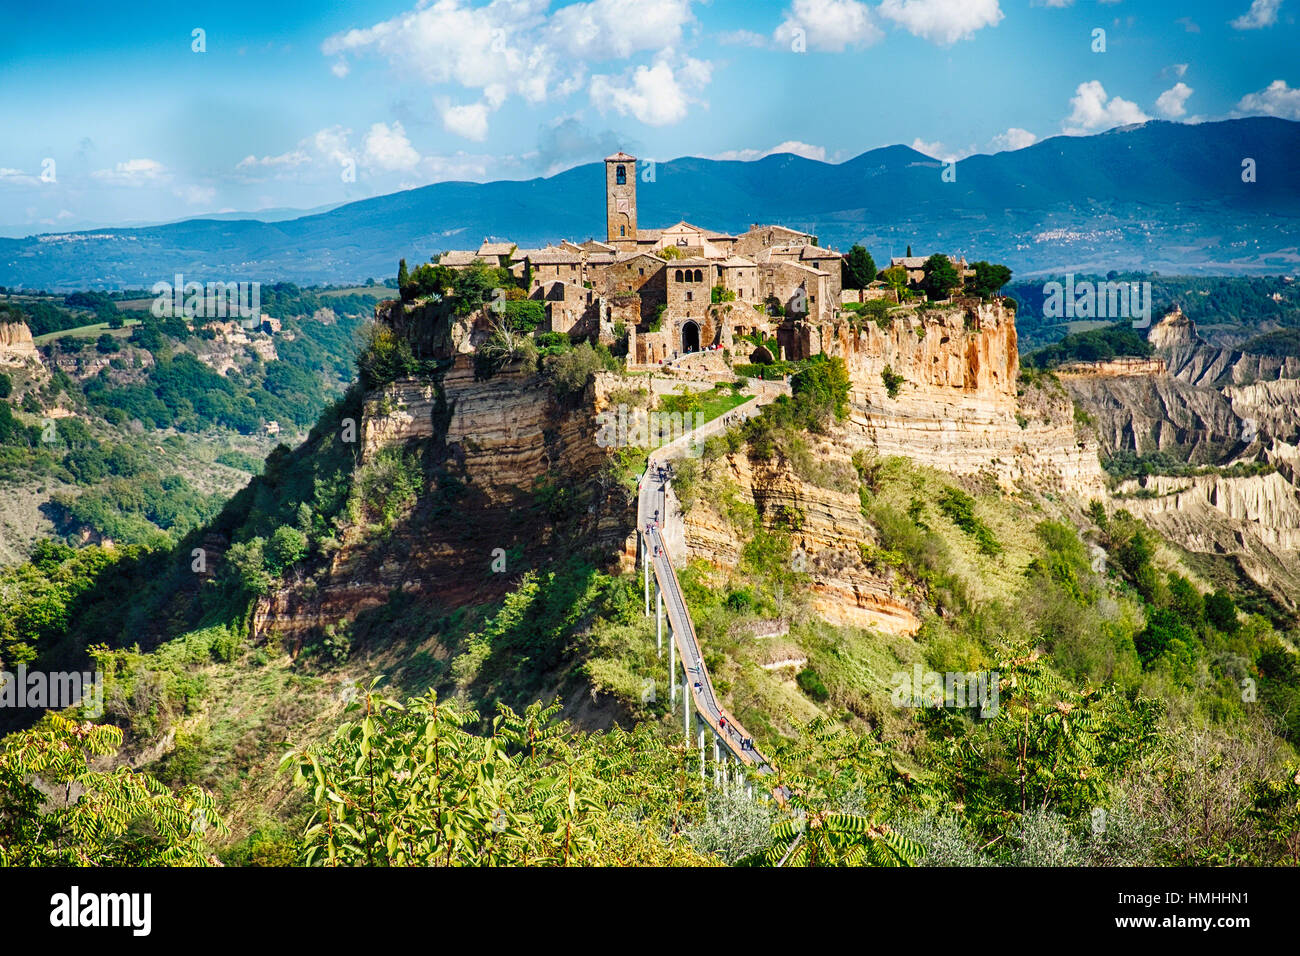 Vue panoramique de l'ancienne ville de Hill Top, Civita di Bagnoregio, Ombrie, Italie Banque D'Images